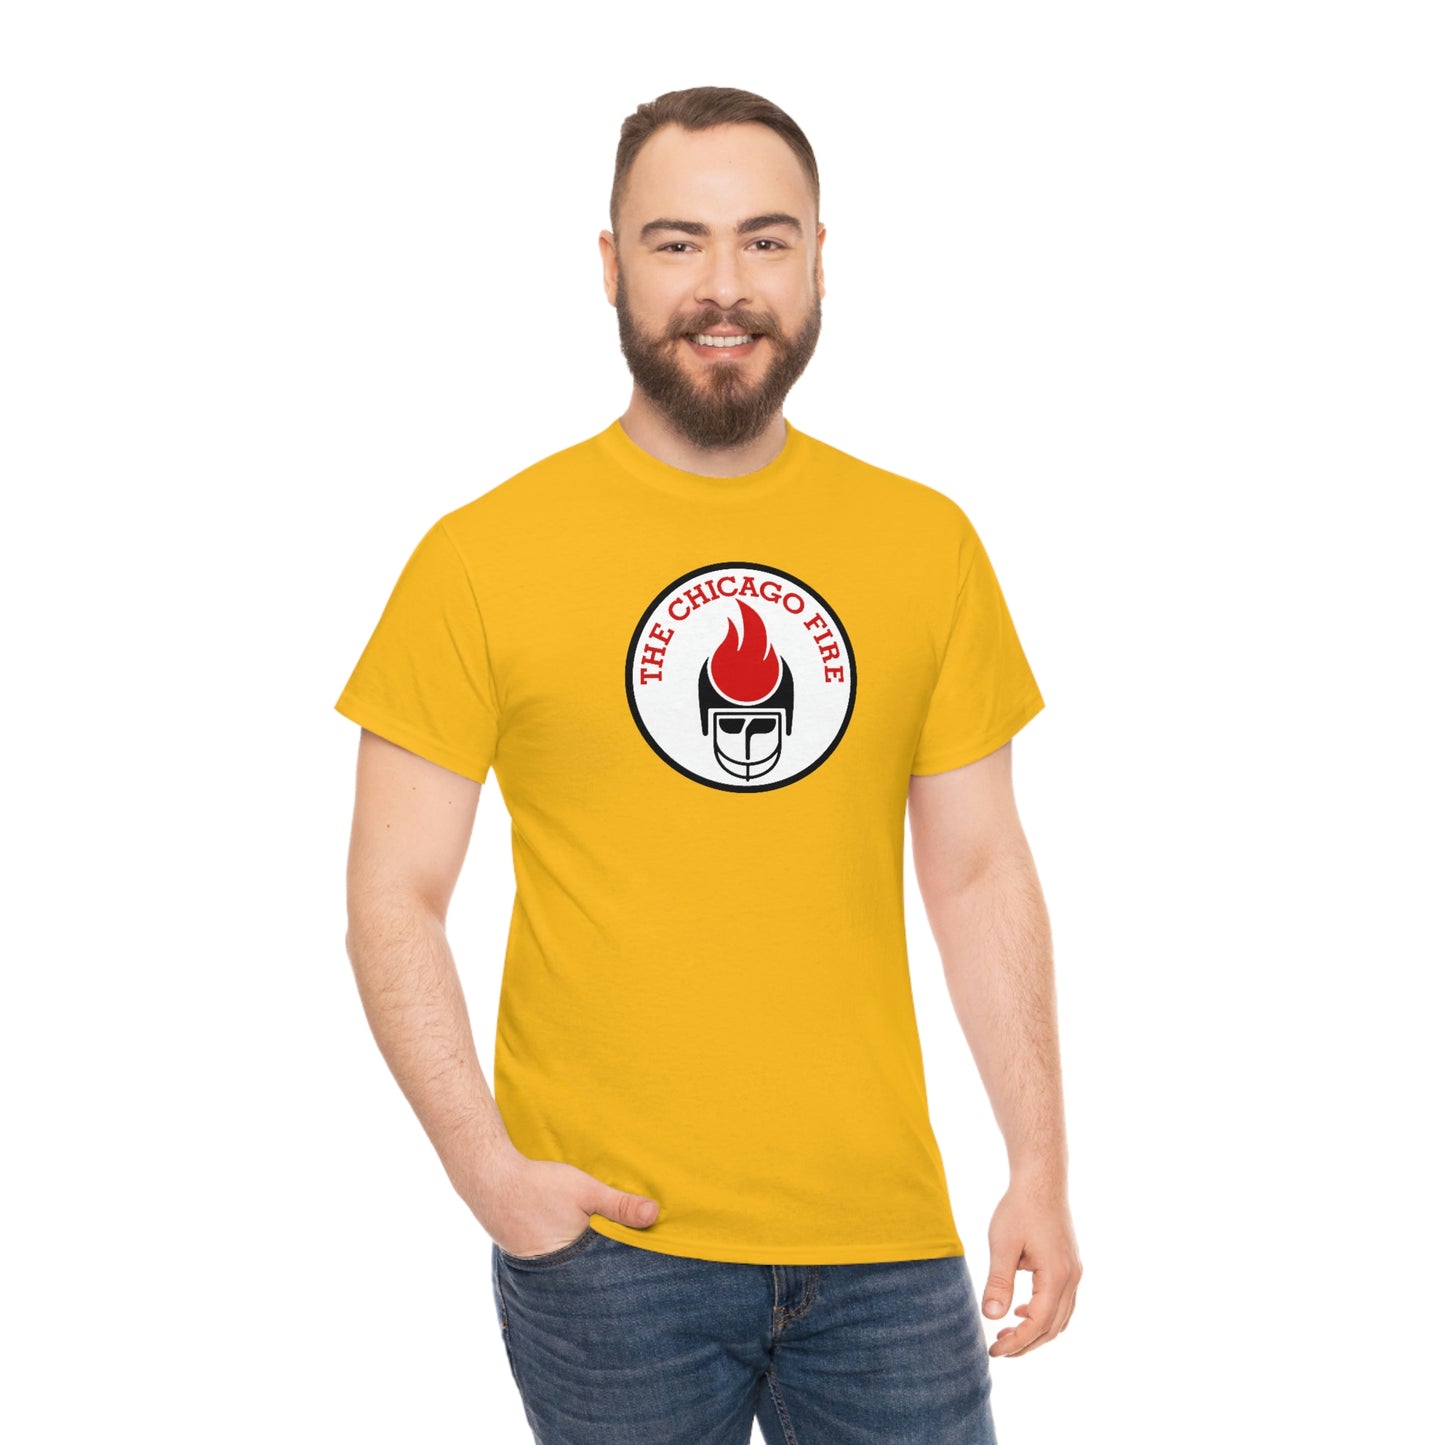 Chicago Fire T-Shirt